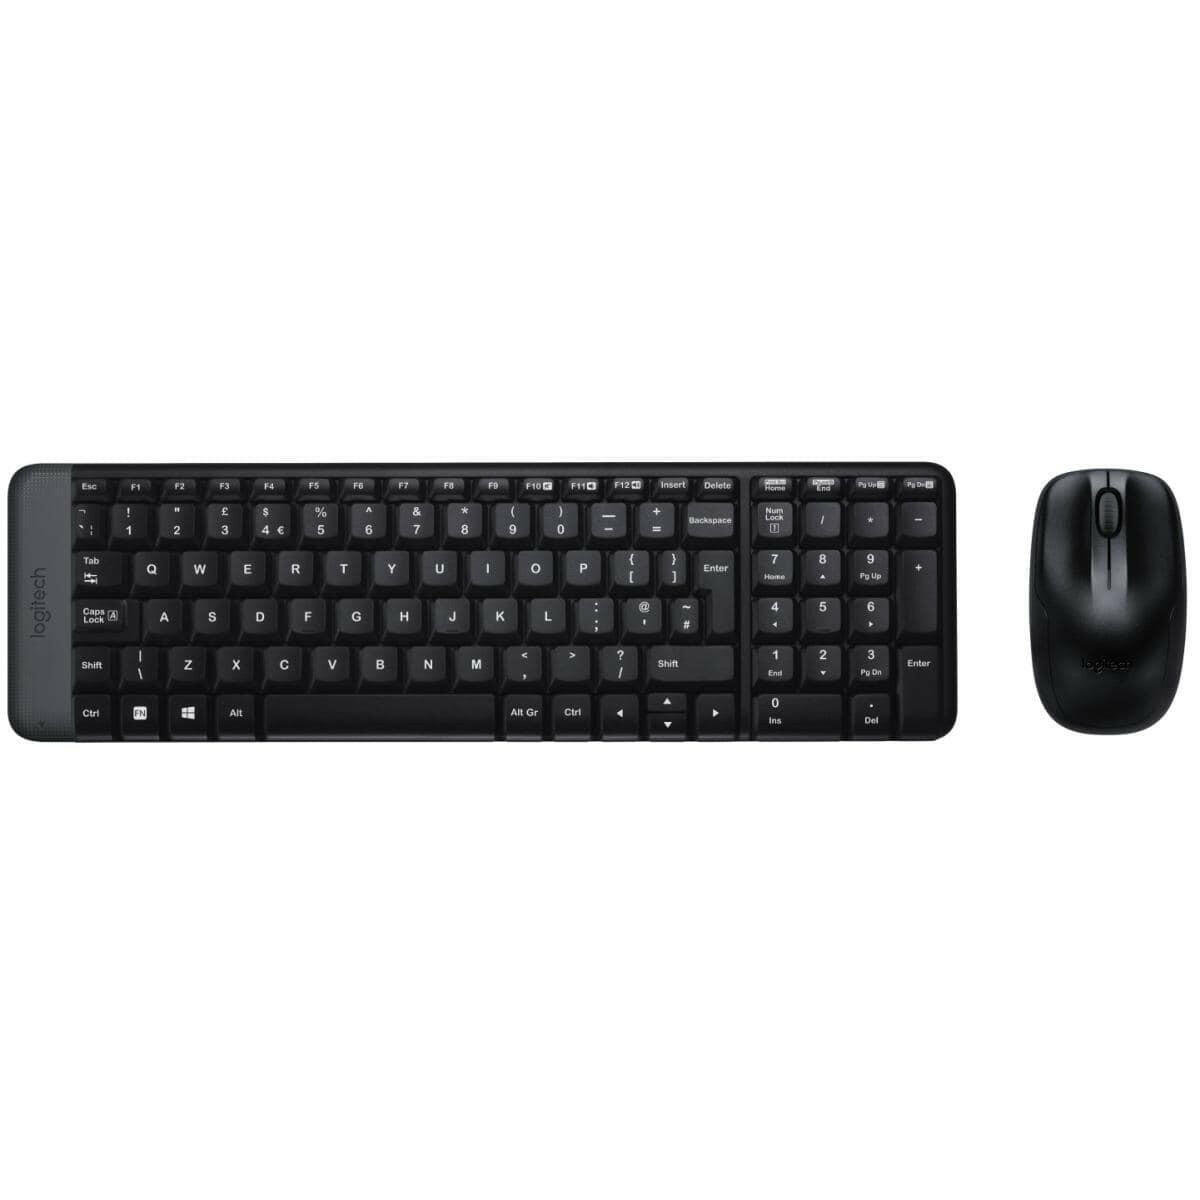 LOGITECH OFFICE KEYBOARD Logitech MK220 Compact 2.4GHz Wireless Black Keyboard & Mouse Combo (عربي)